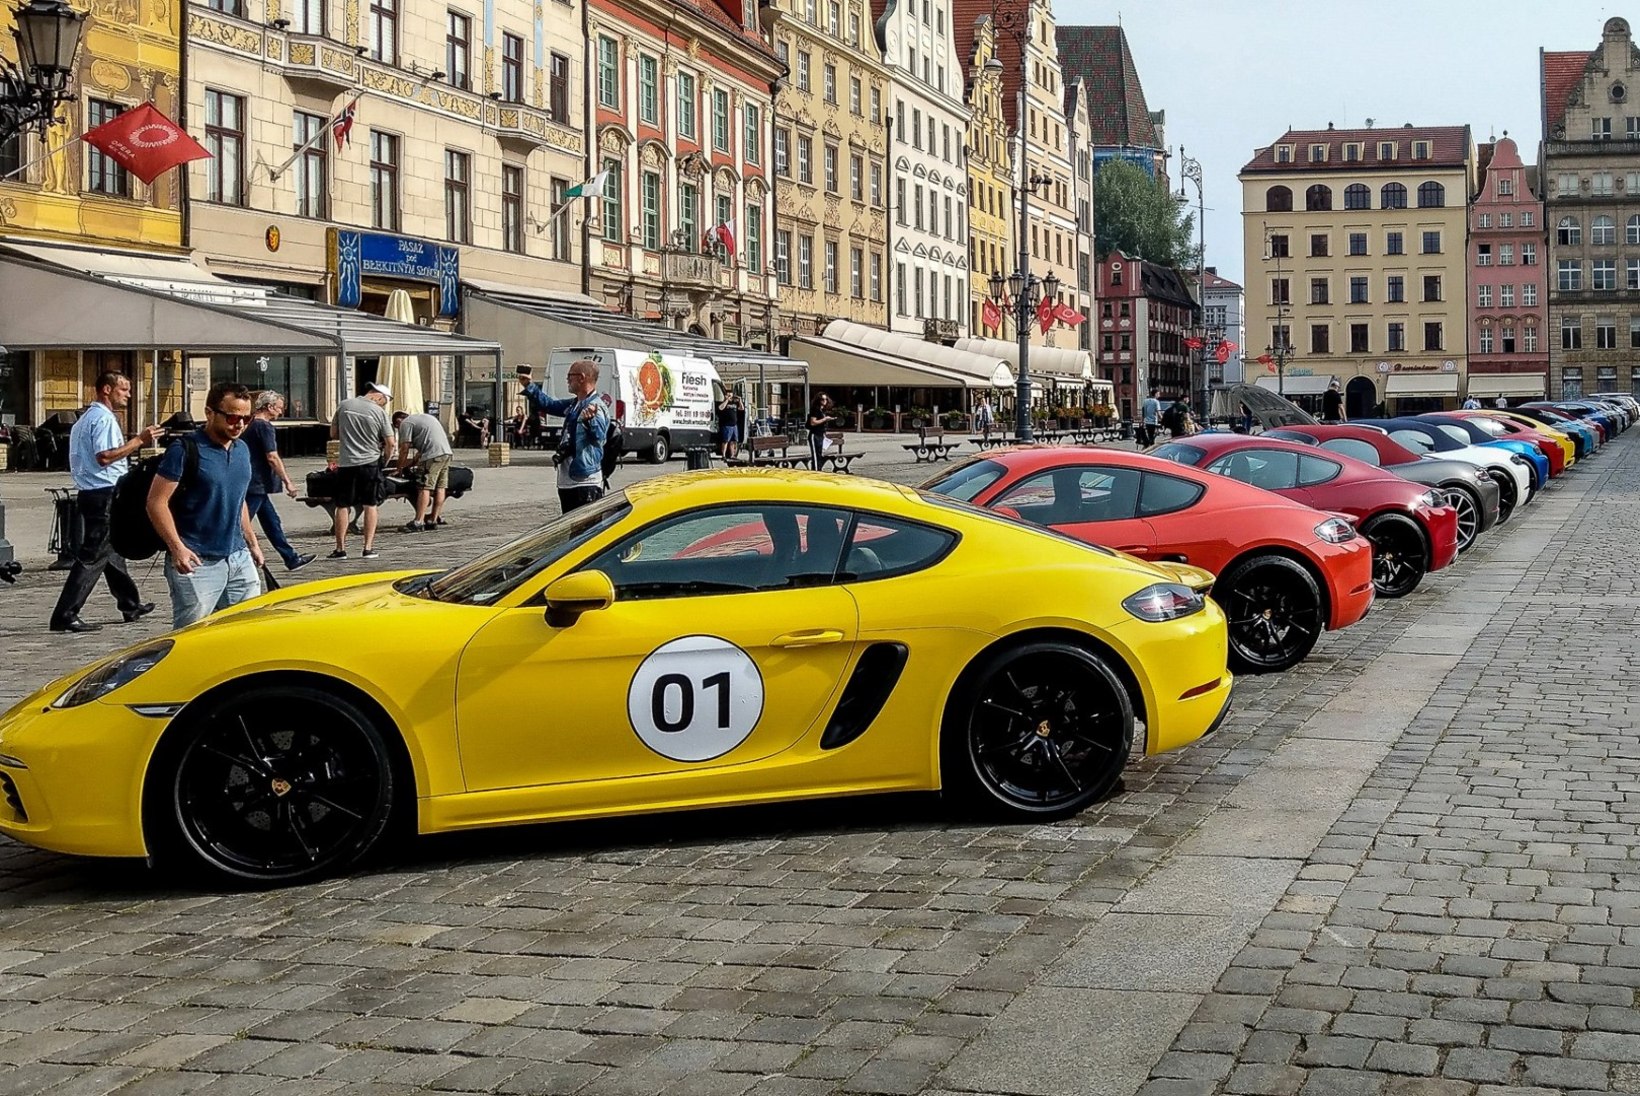 Paradiis Porsche moodi ehk juubilariga Sileesia teedel sõidumõnulemas